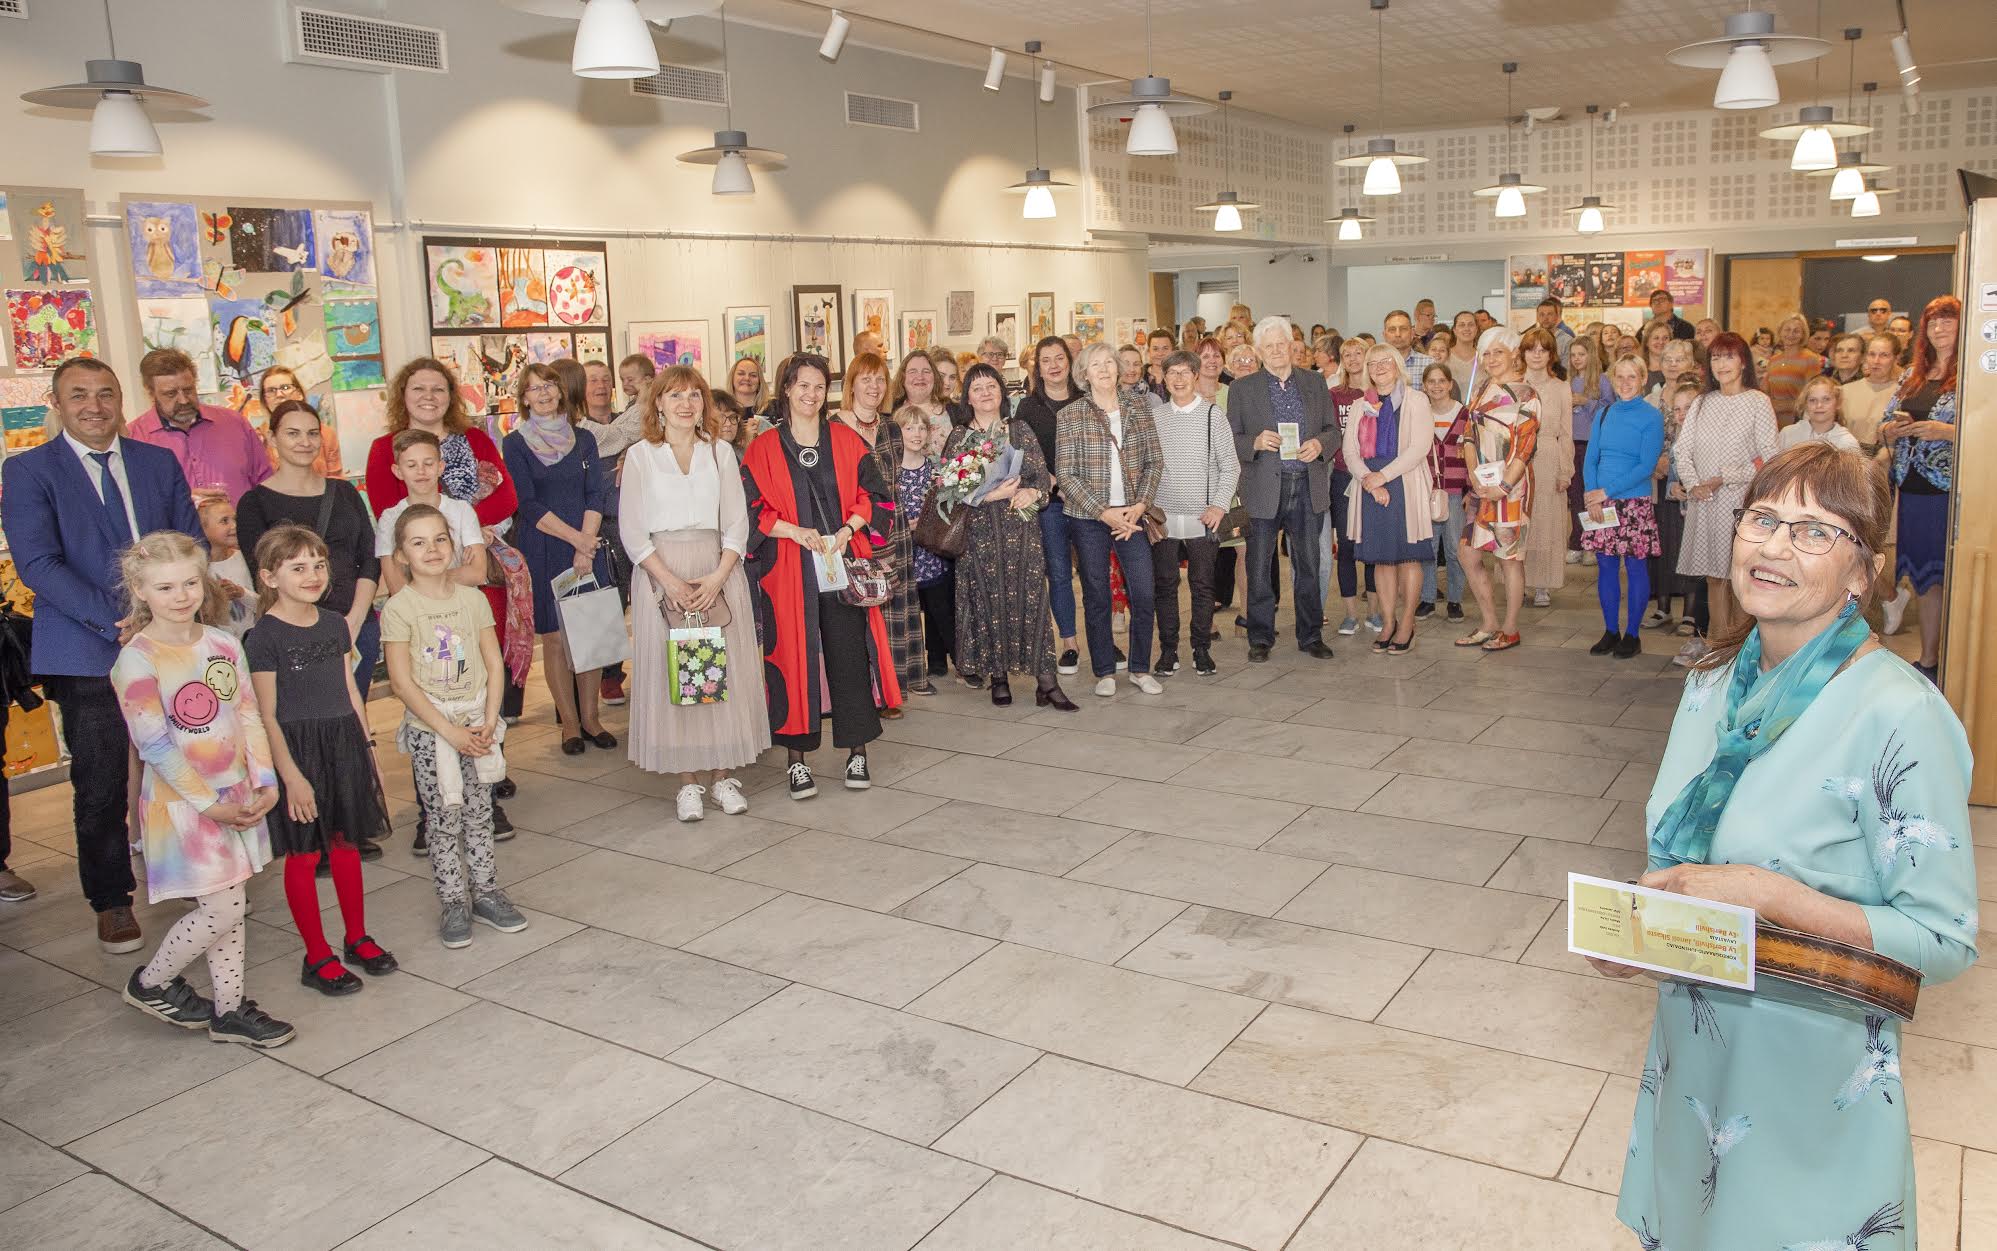 Võru kunstikool tähistas oma 20. sünnipäeva traditsioonilise aastanäituse avamisega Kandle linnagaleriis. Foto: AIGAR NAGEL